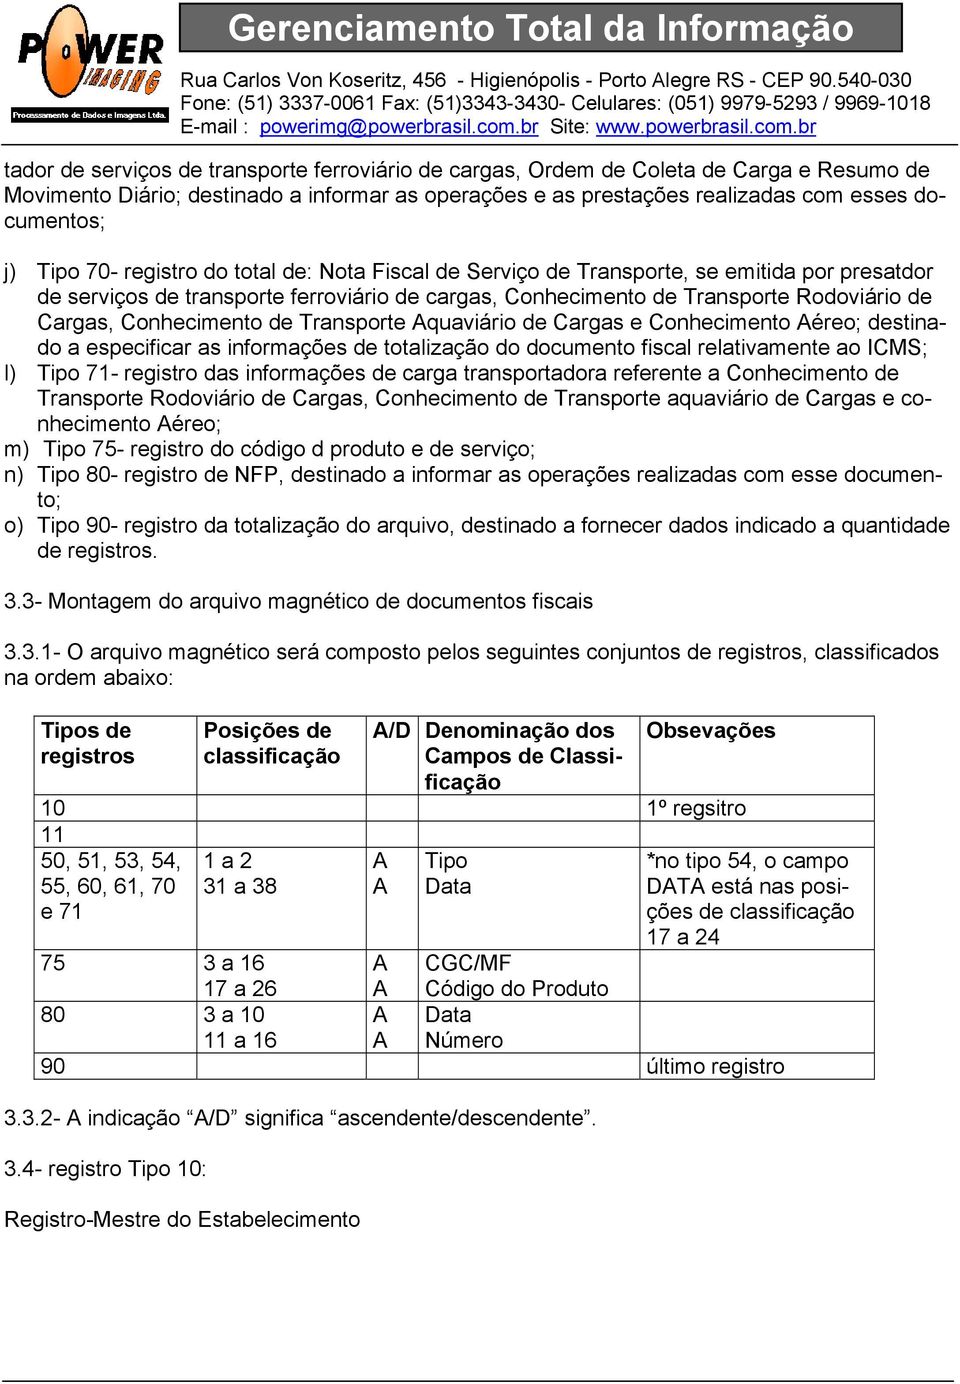 Conhecimento de Transporte Aquaviário de Cargas e Conhecimento Aéreo; destinado a especificar as informações de totalização do documento fiscal relativamente ao ICMS; l) Tipo 71- registro das